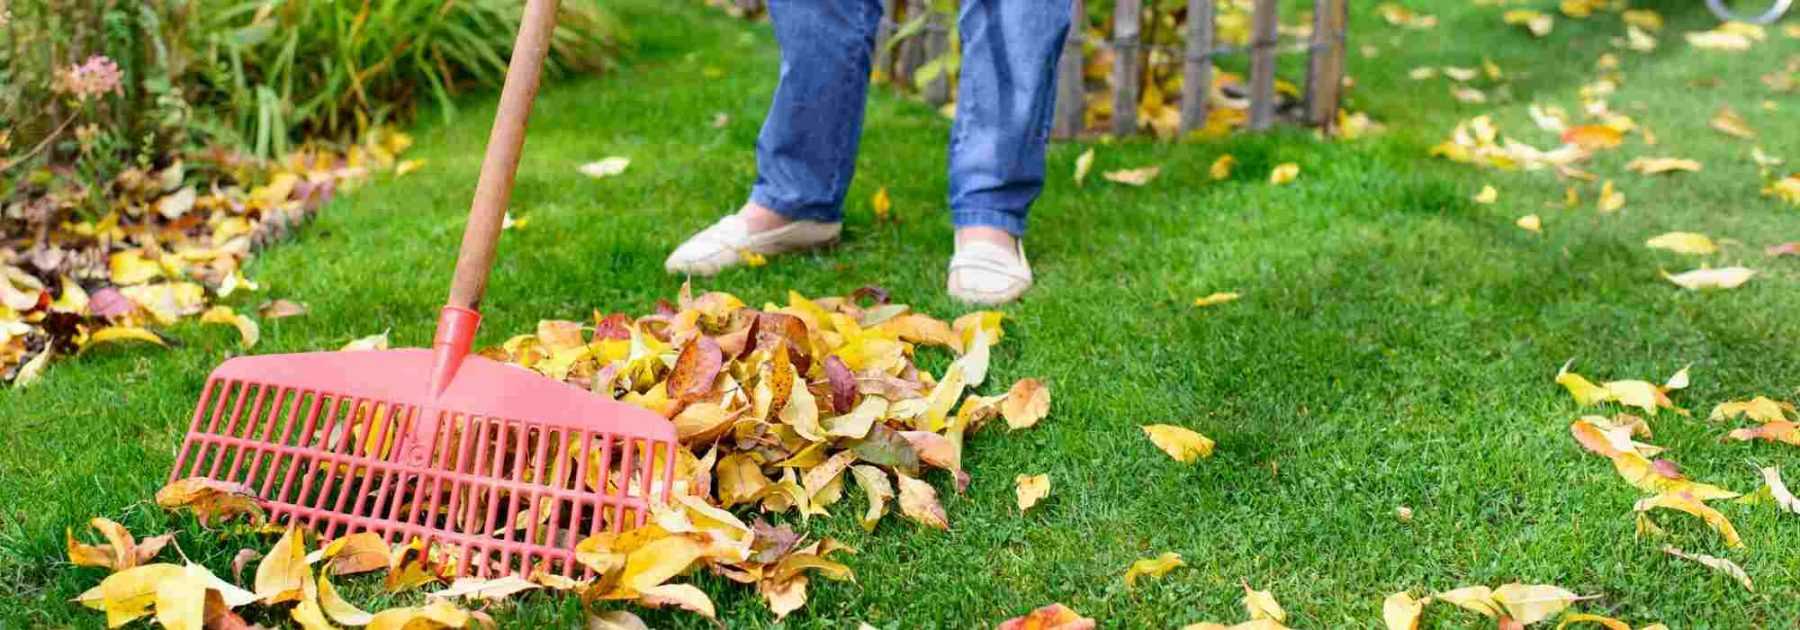 Ramasser les feuilles mortes : que dit la loi ?